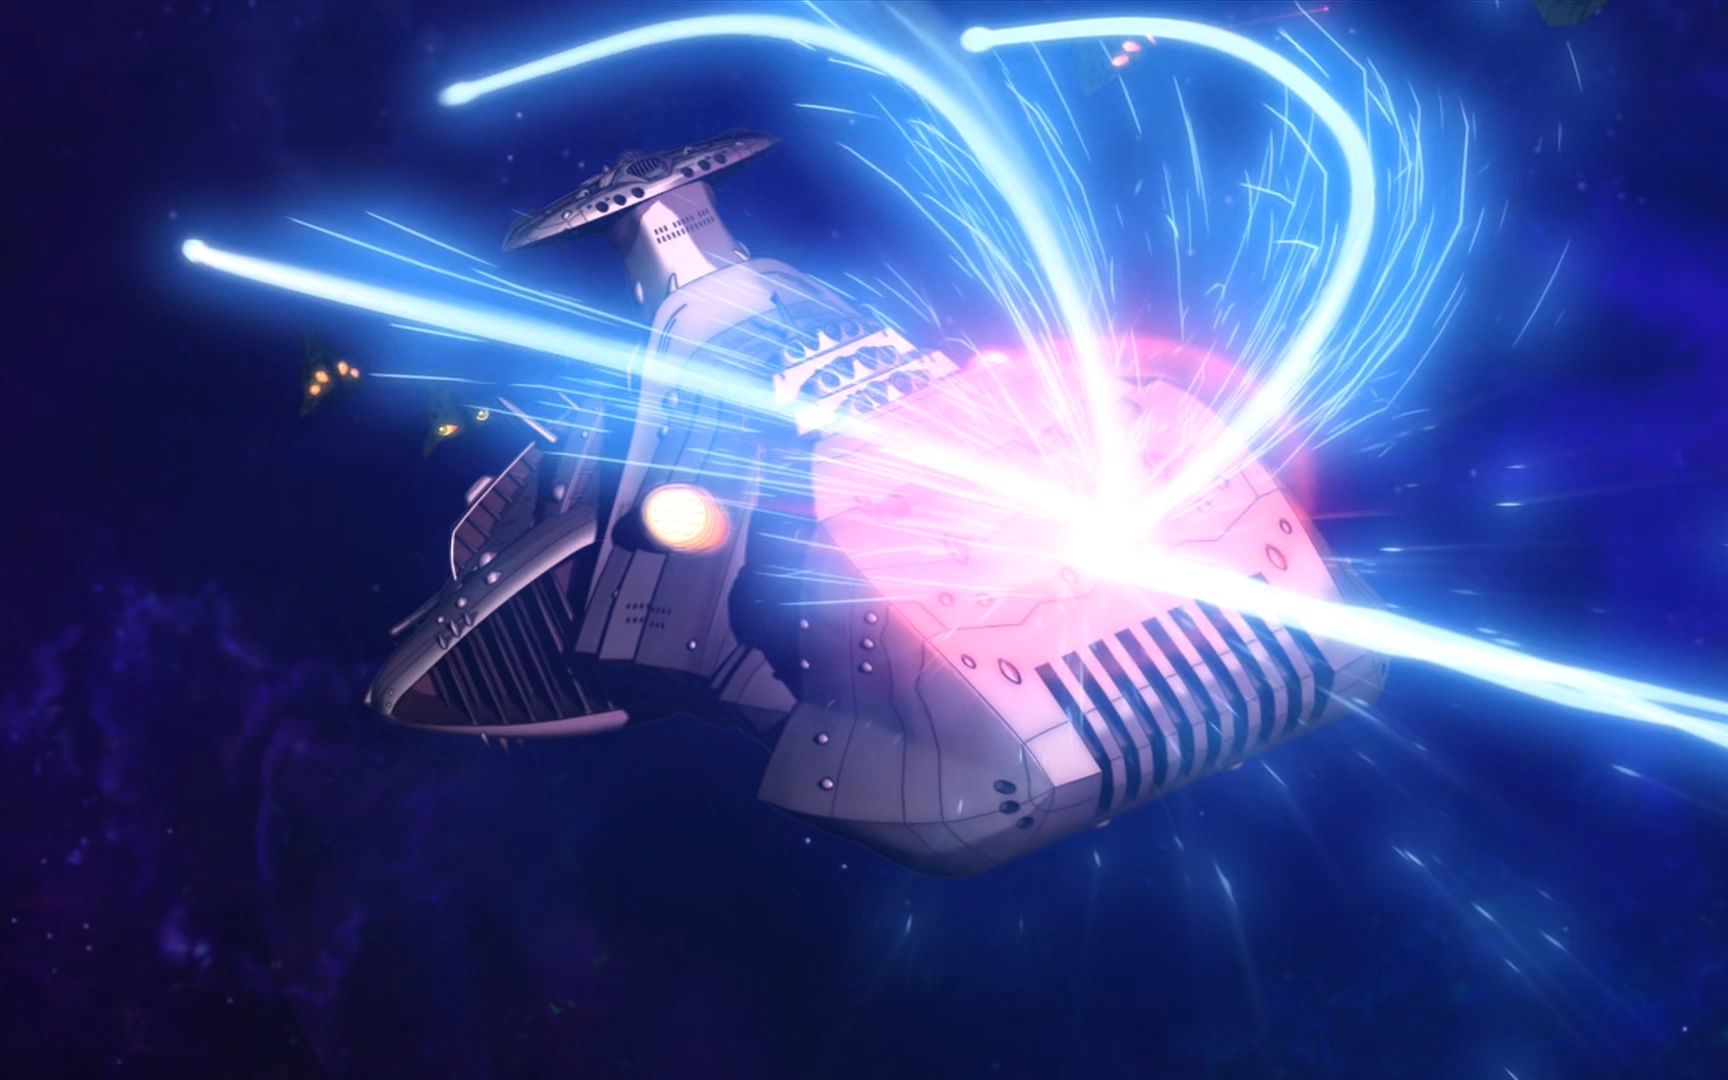 宇宙战舰大和号 zoelguut级星际战舰装甲弹开阳电子冲击炮的攻击